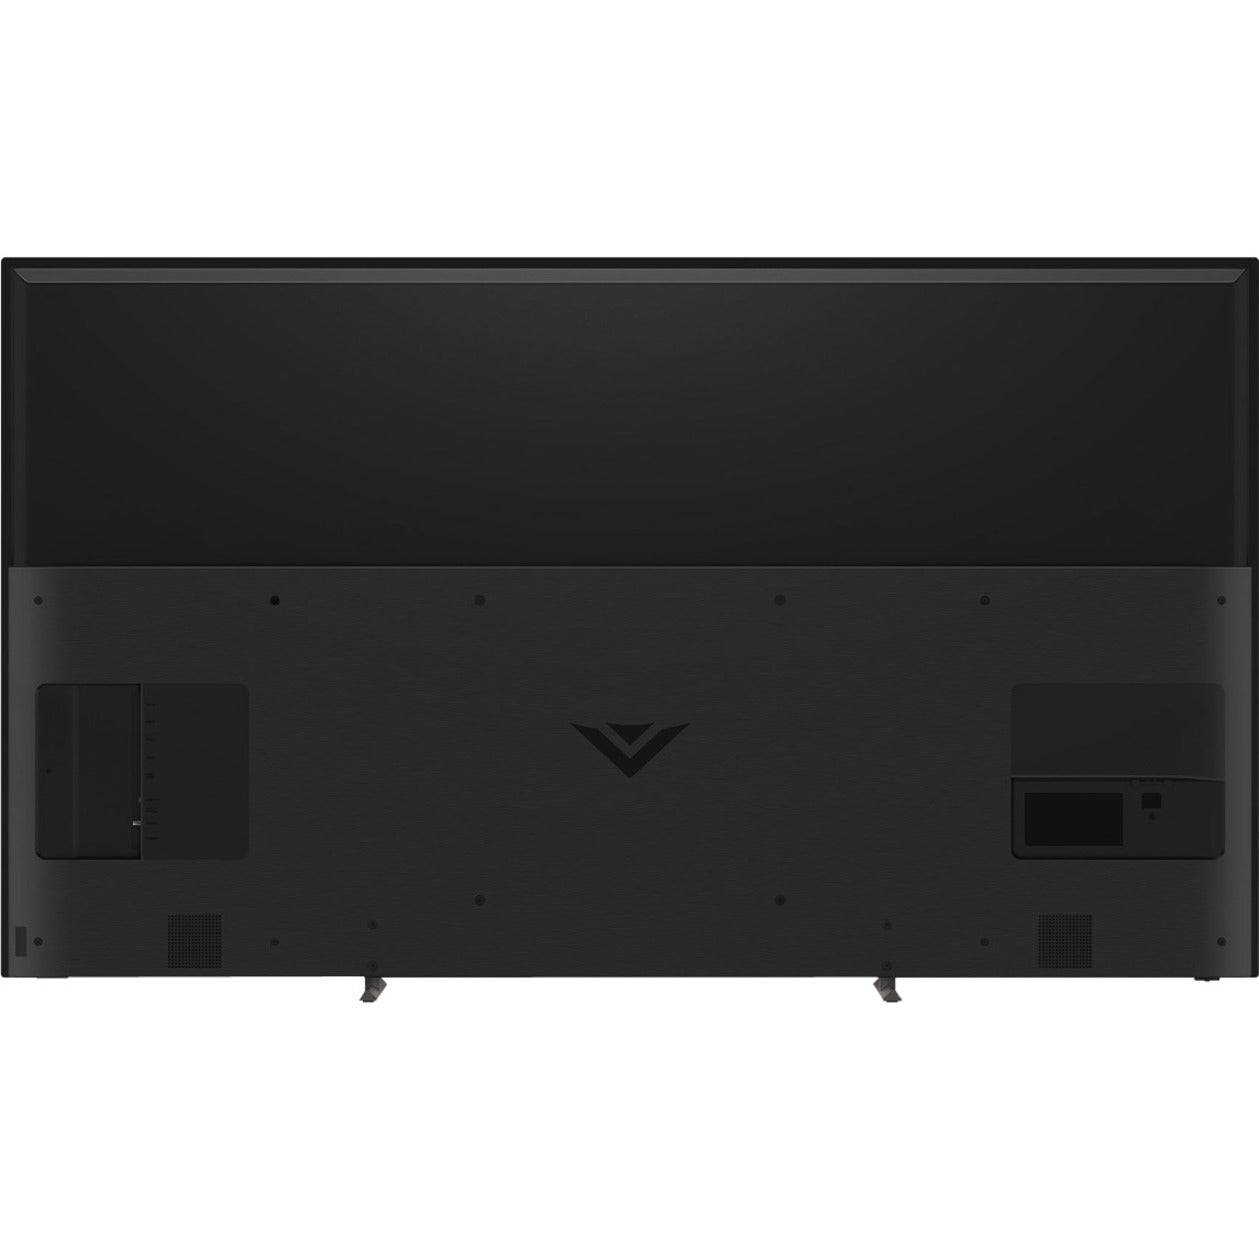 VIZIO P75Q9-J01 P-Series Quantum 75" Class 4K HDR Smart TV, Clear Action 960, 120Hz Refresh Rate